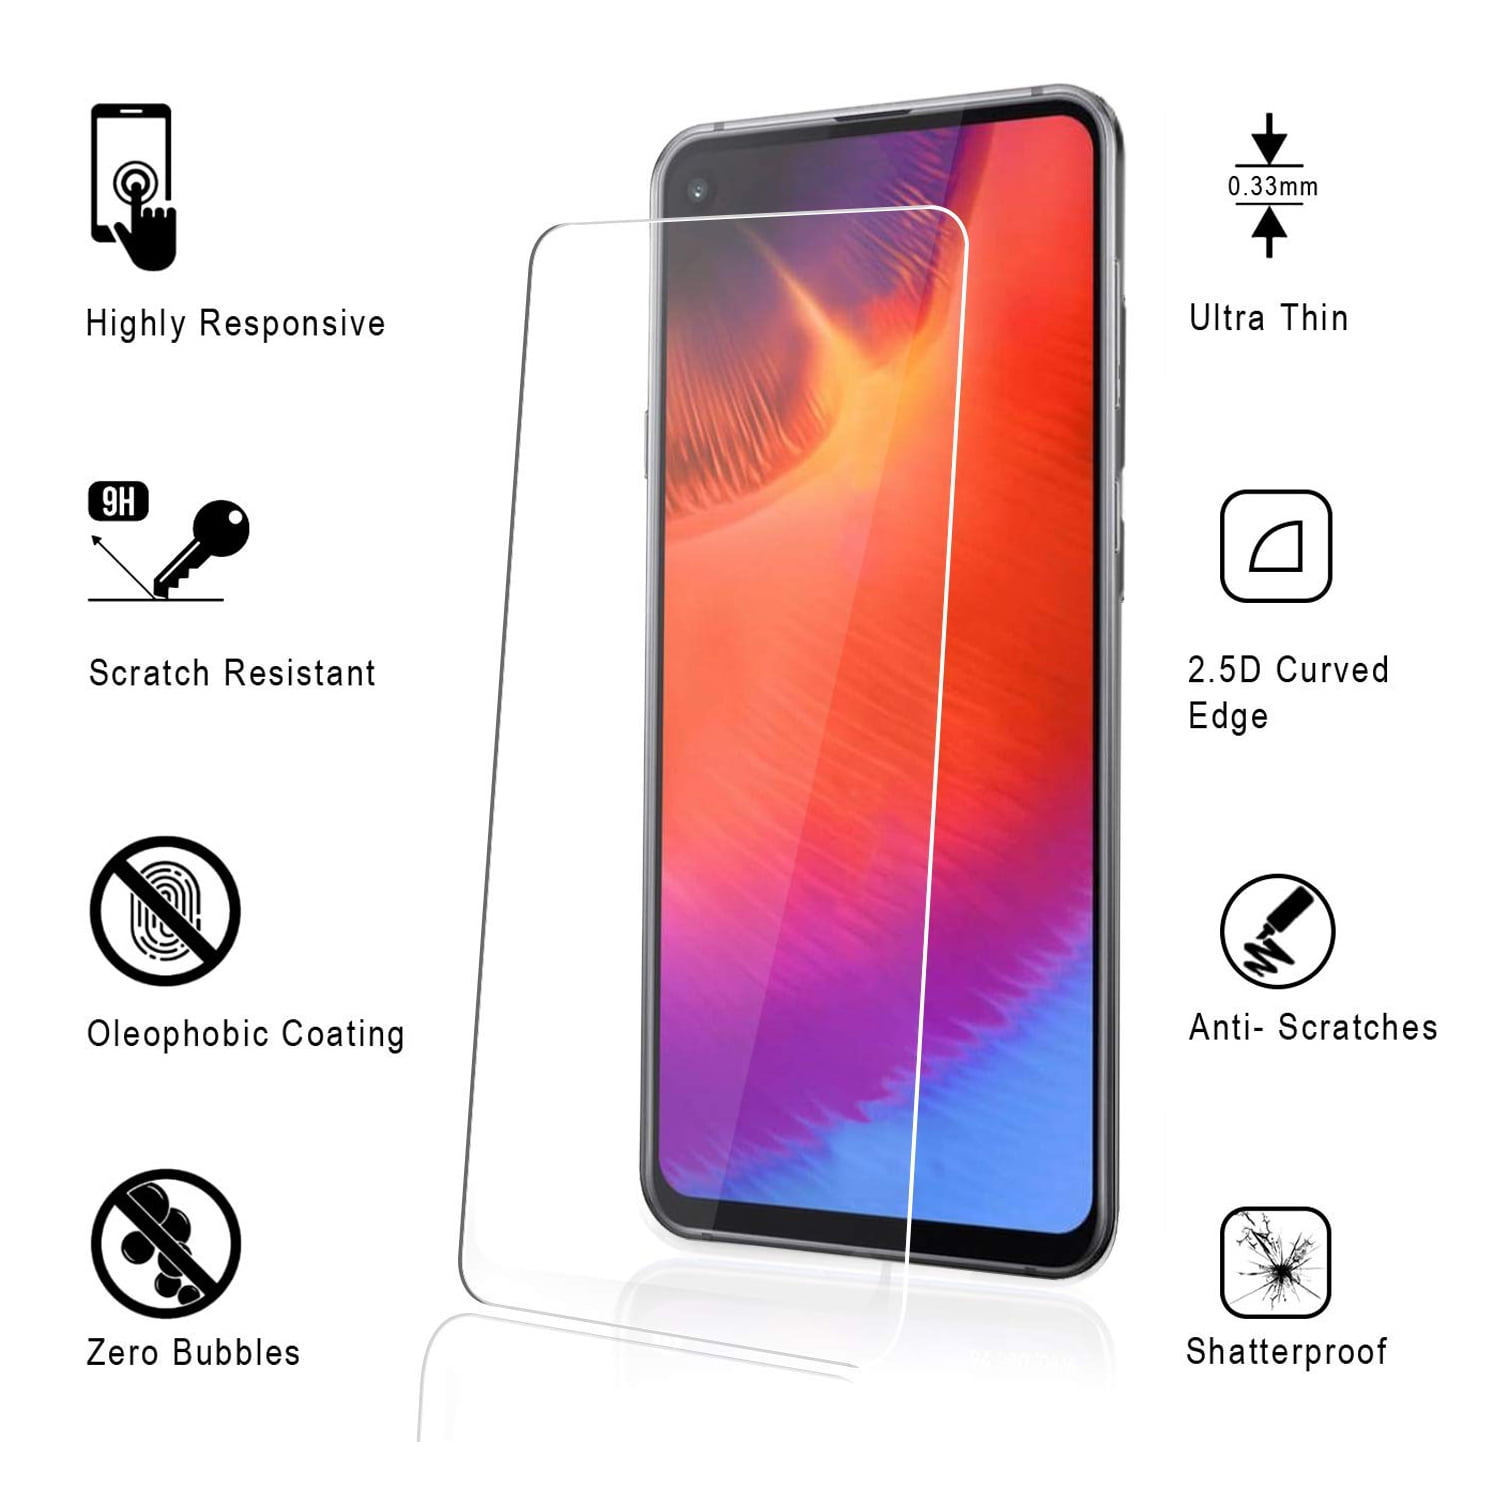 Samsung Galaxy A60 screen protector - bảo vệ cho màn hình điện thoại của bạn khỏi những vết trầy xước và va đập. Với công nghệ chất lượng cao, màn hình sẽ được bảo vệ tối đa, tăng cường tính độc đáo và thẩm mỹ của máy. Bên cạnh đó, việc cài đặt và tháo lắp rất đơn giản, không làm ảnh hưởng đến trải nghiệm sử dụng của bạn.